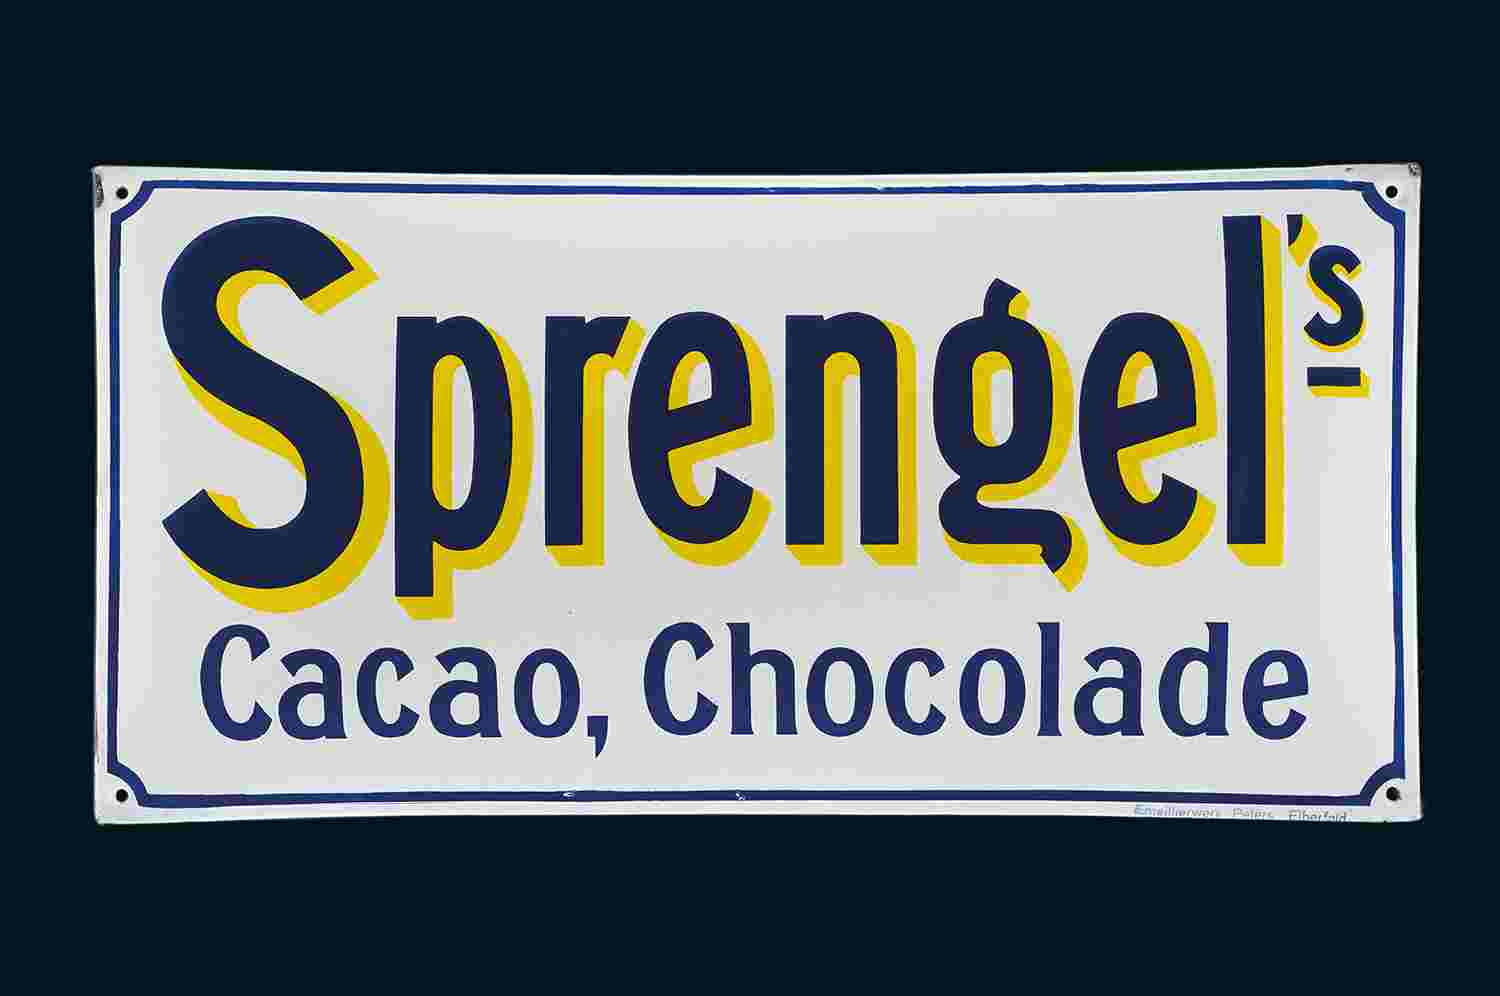 Sprengel's Cacao, Chocolade 